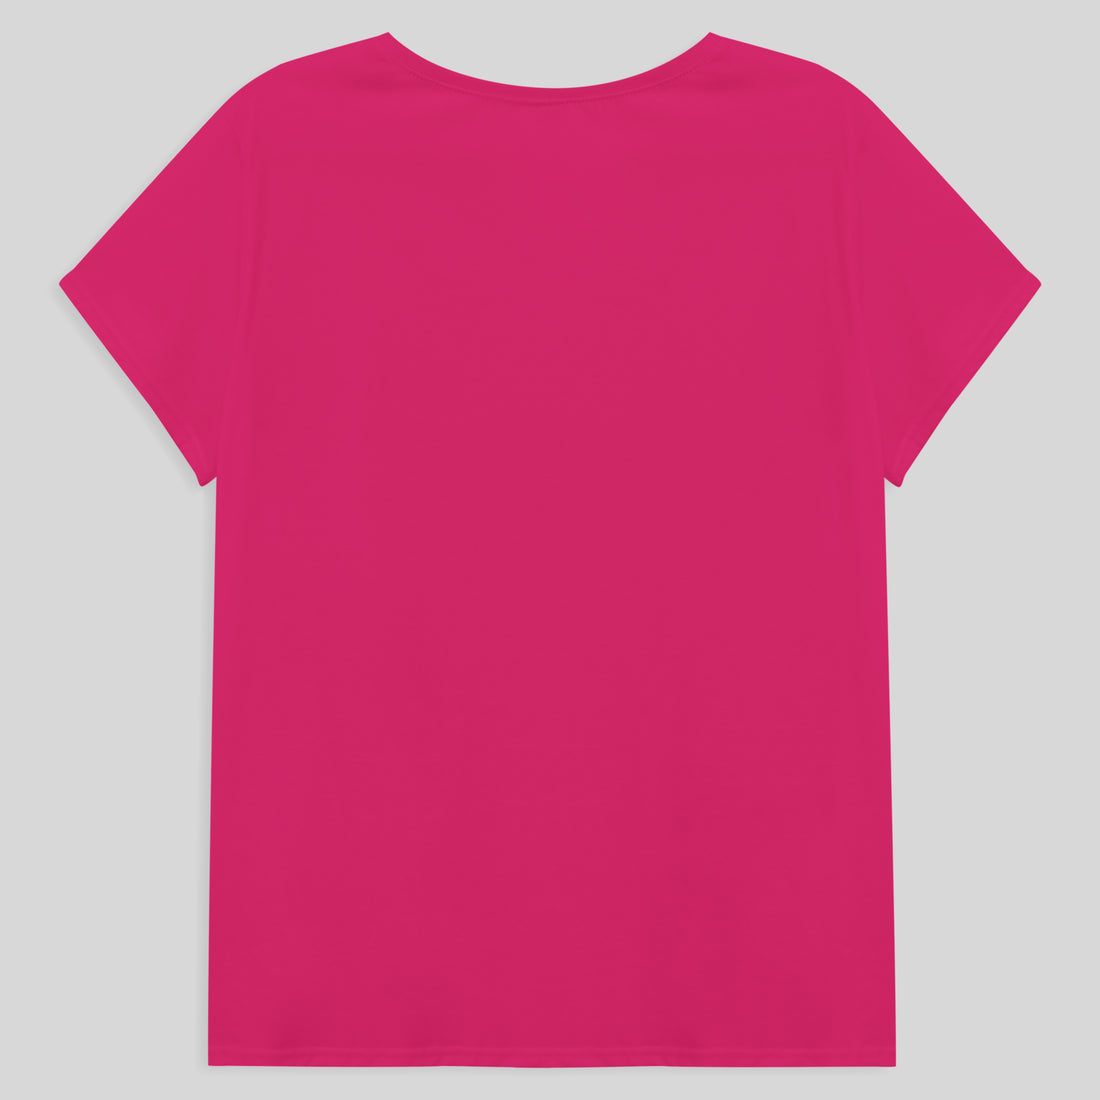 Camiseta Babylook Algodão Premium Plus Size Feminina - Pink